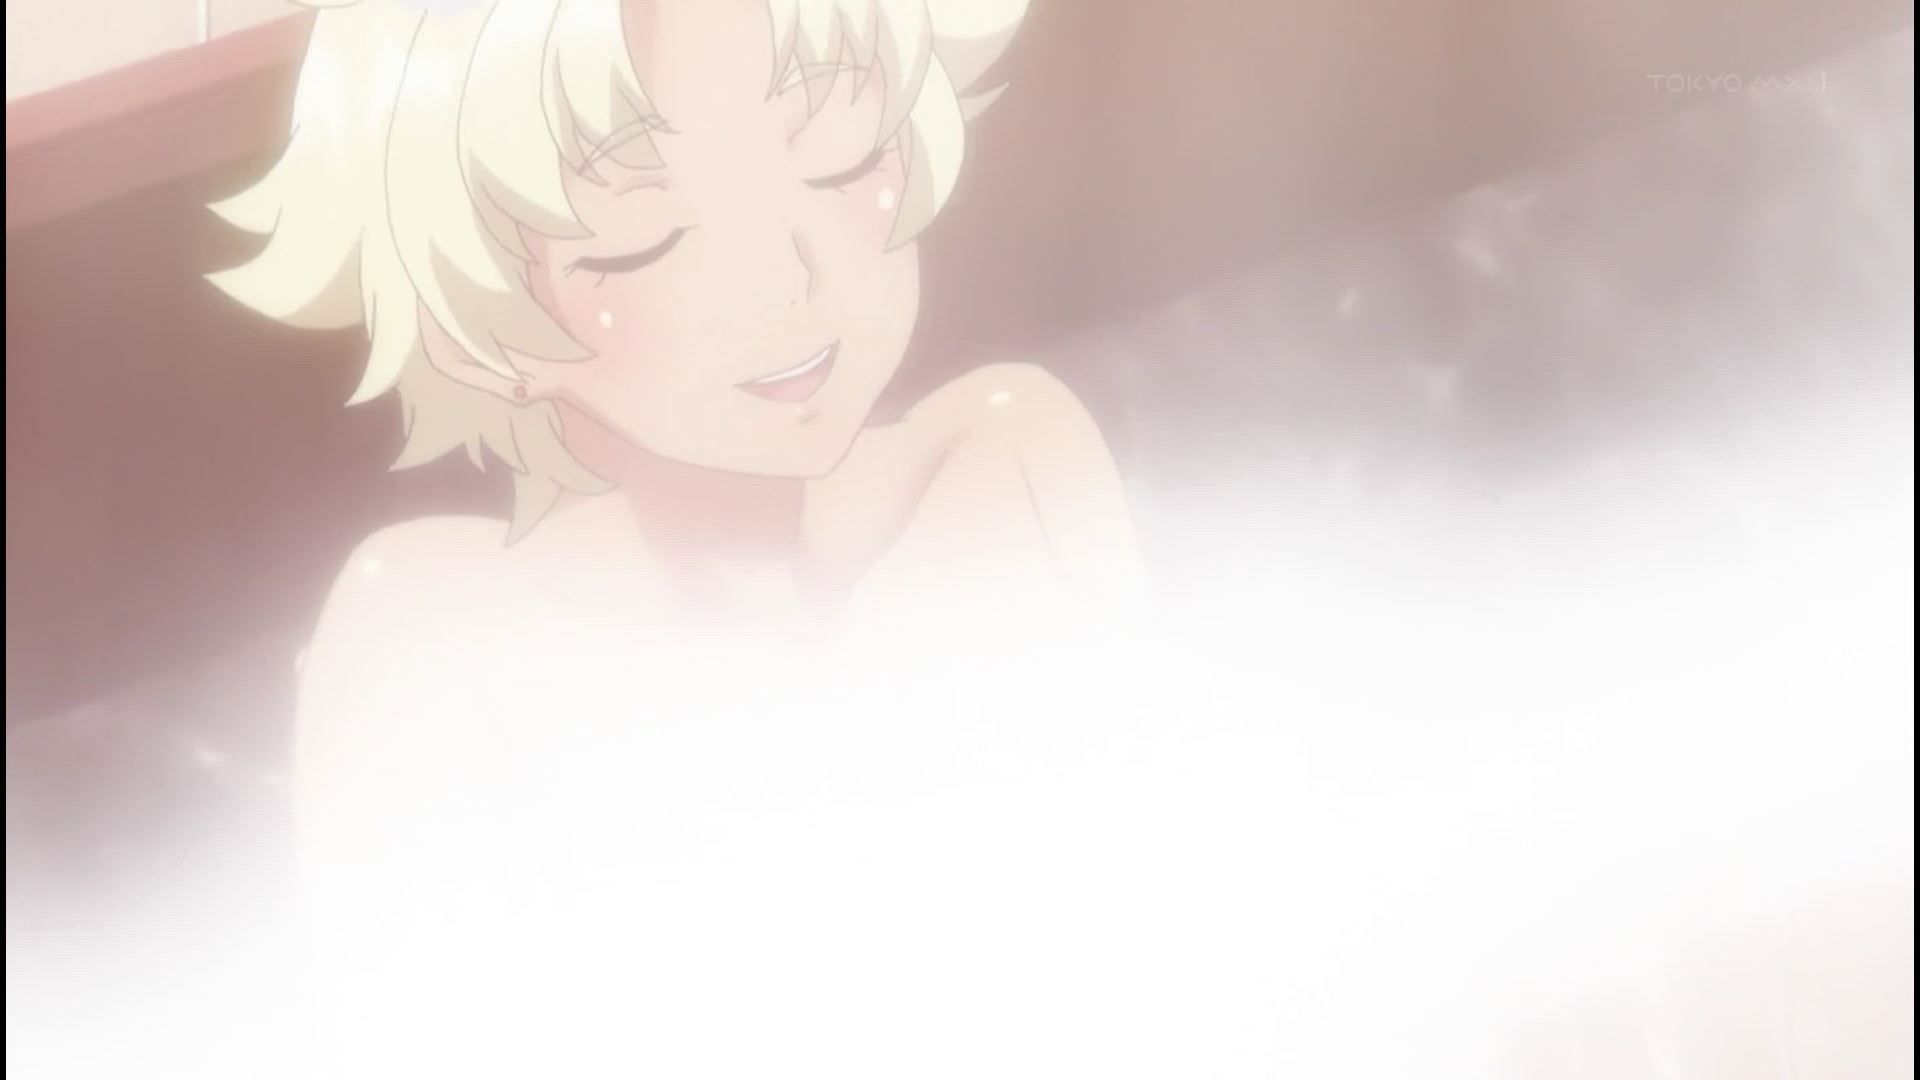 Anime [Kandagawa JETGIRLS] 3 episodes, such as girls erotic and public bathing scene! 12